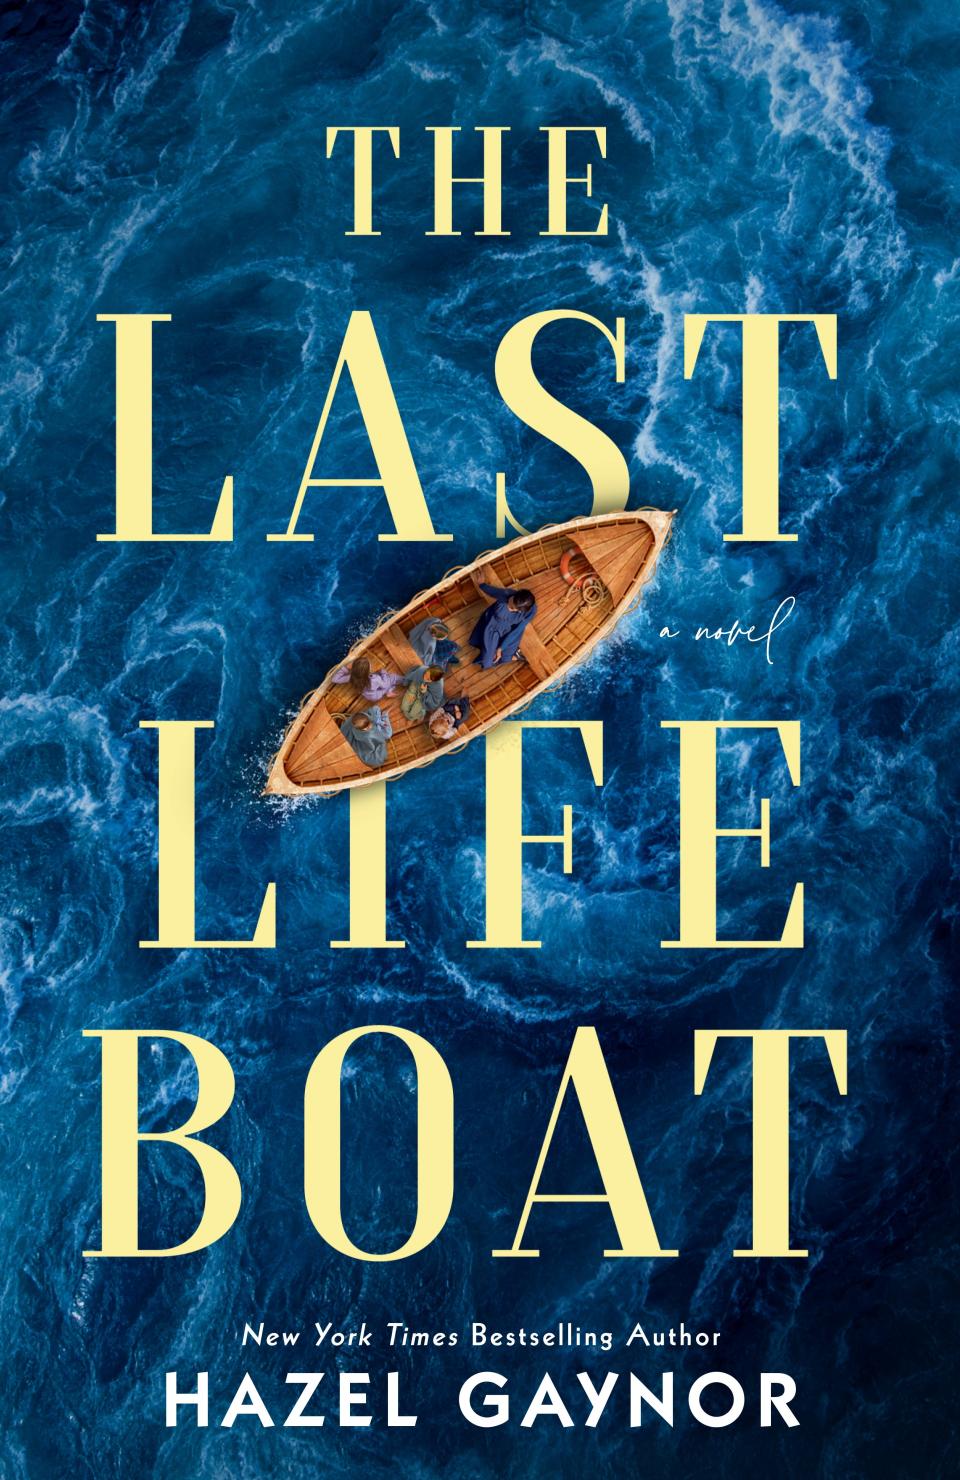 "The Last Life Boat," by Hazel Gaynor